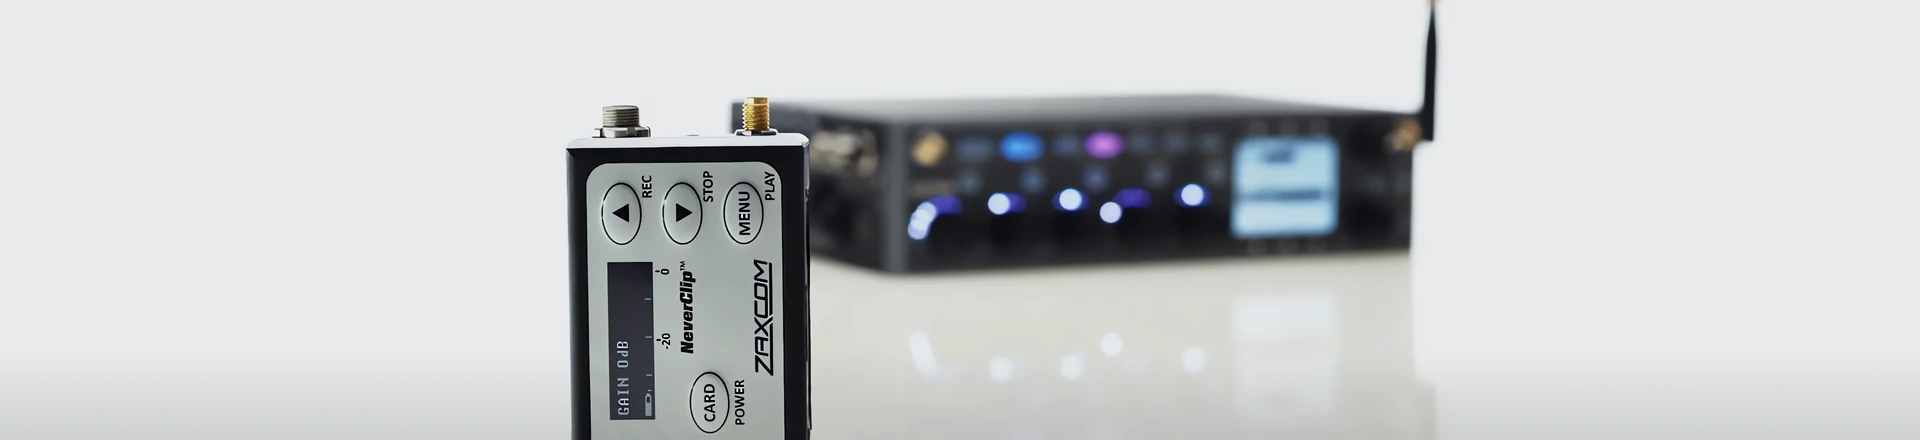  Systemy bezprzewodowe Zaxcom od teraz w dystrybucji Audio Plus